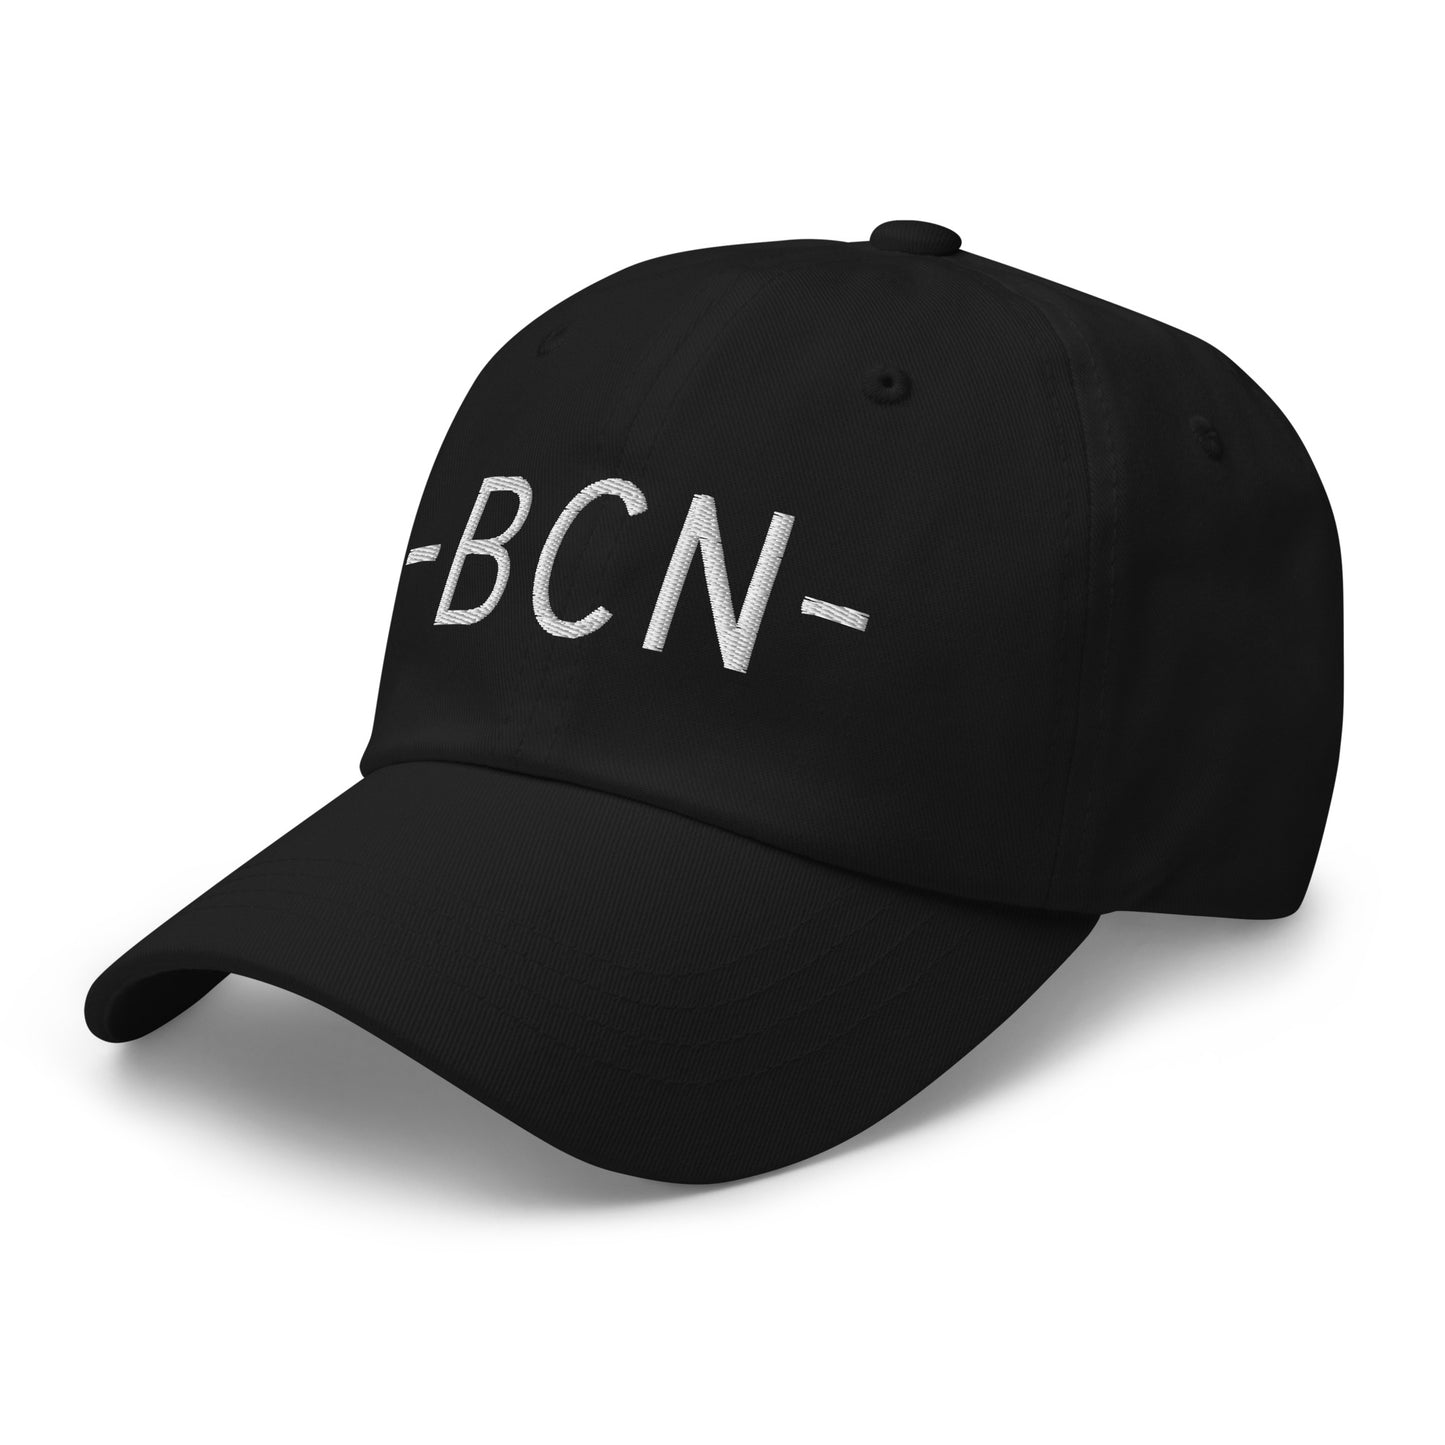 Souvenir Baseball Cap - White • BCN Barcelona • YHM Designs - Image 13